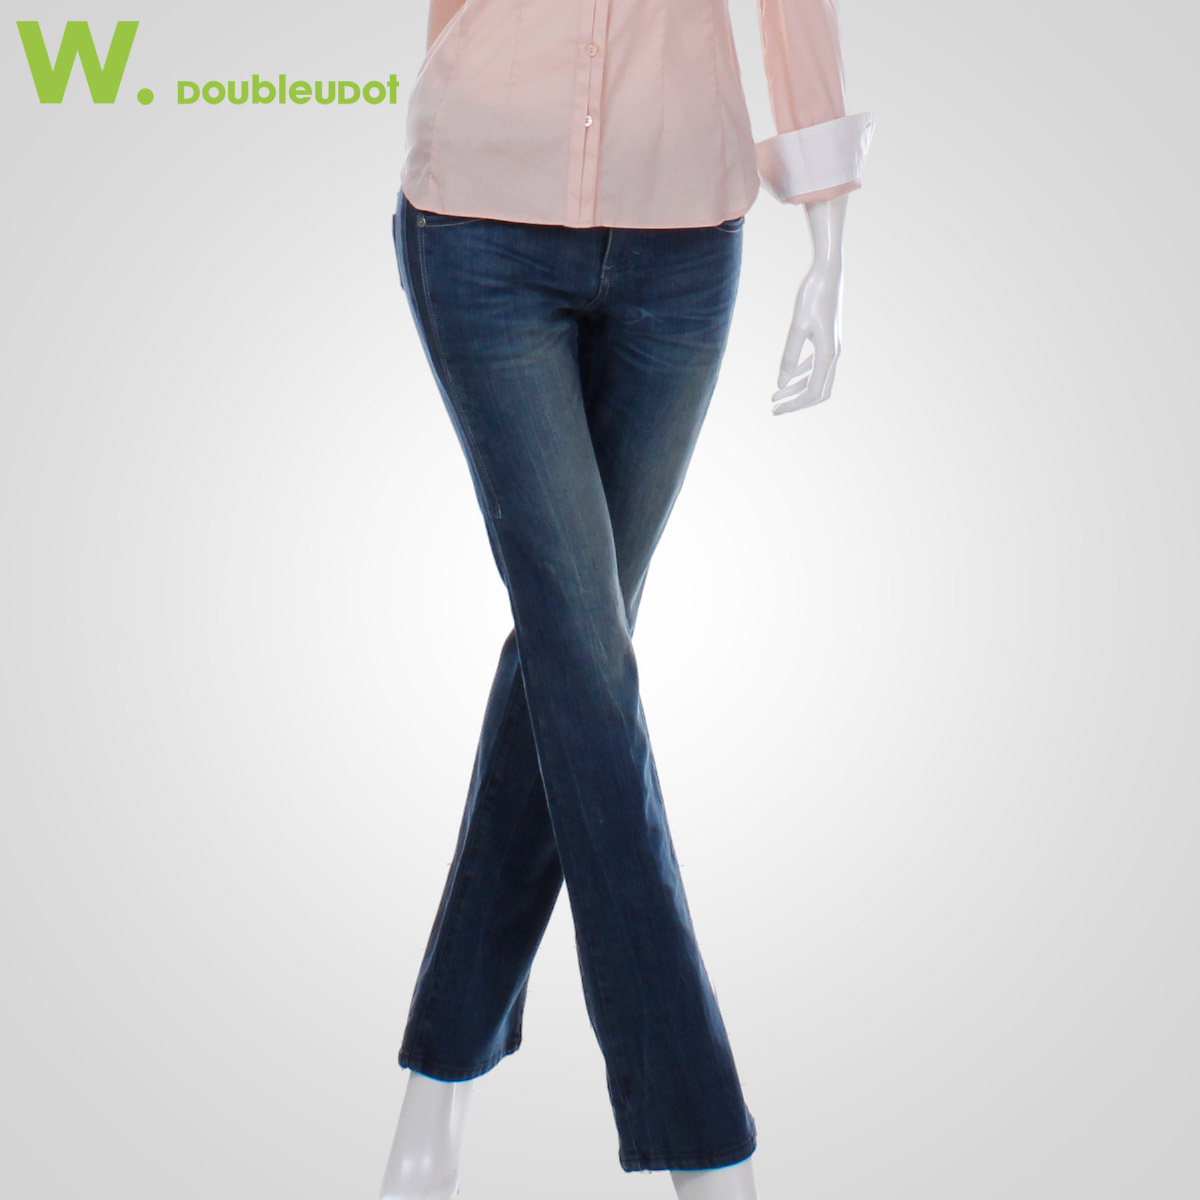 【正品】WJ1SL7560-W.doubleudot专柜韩版推荐女装人气牛仔裤